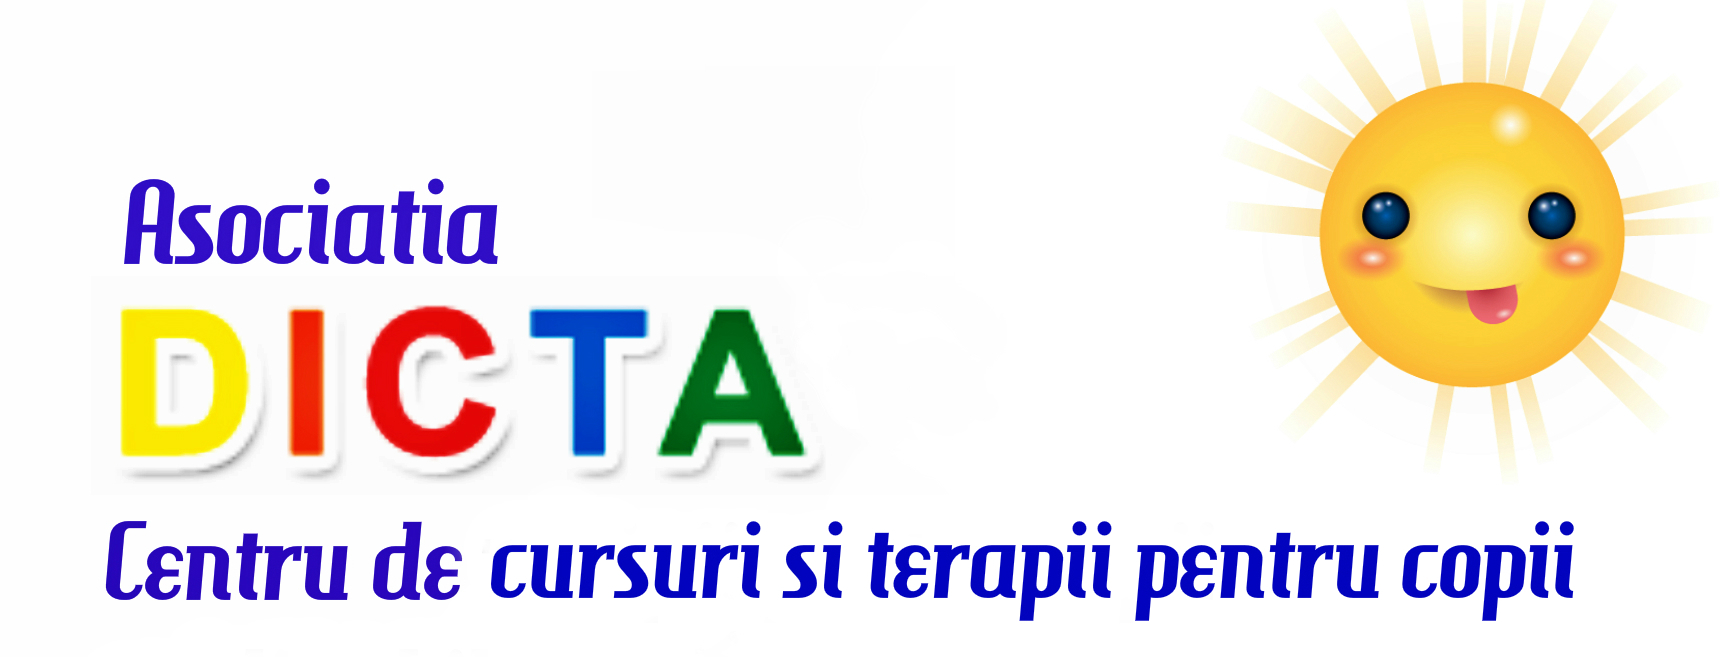 Asociatia Dicta logo